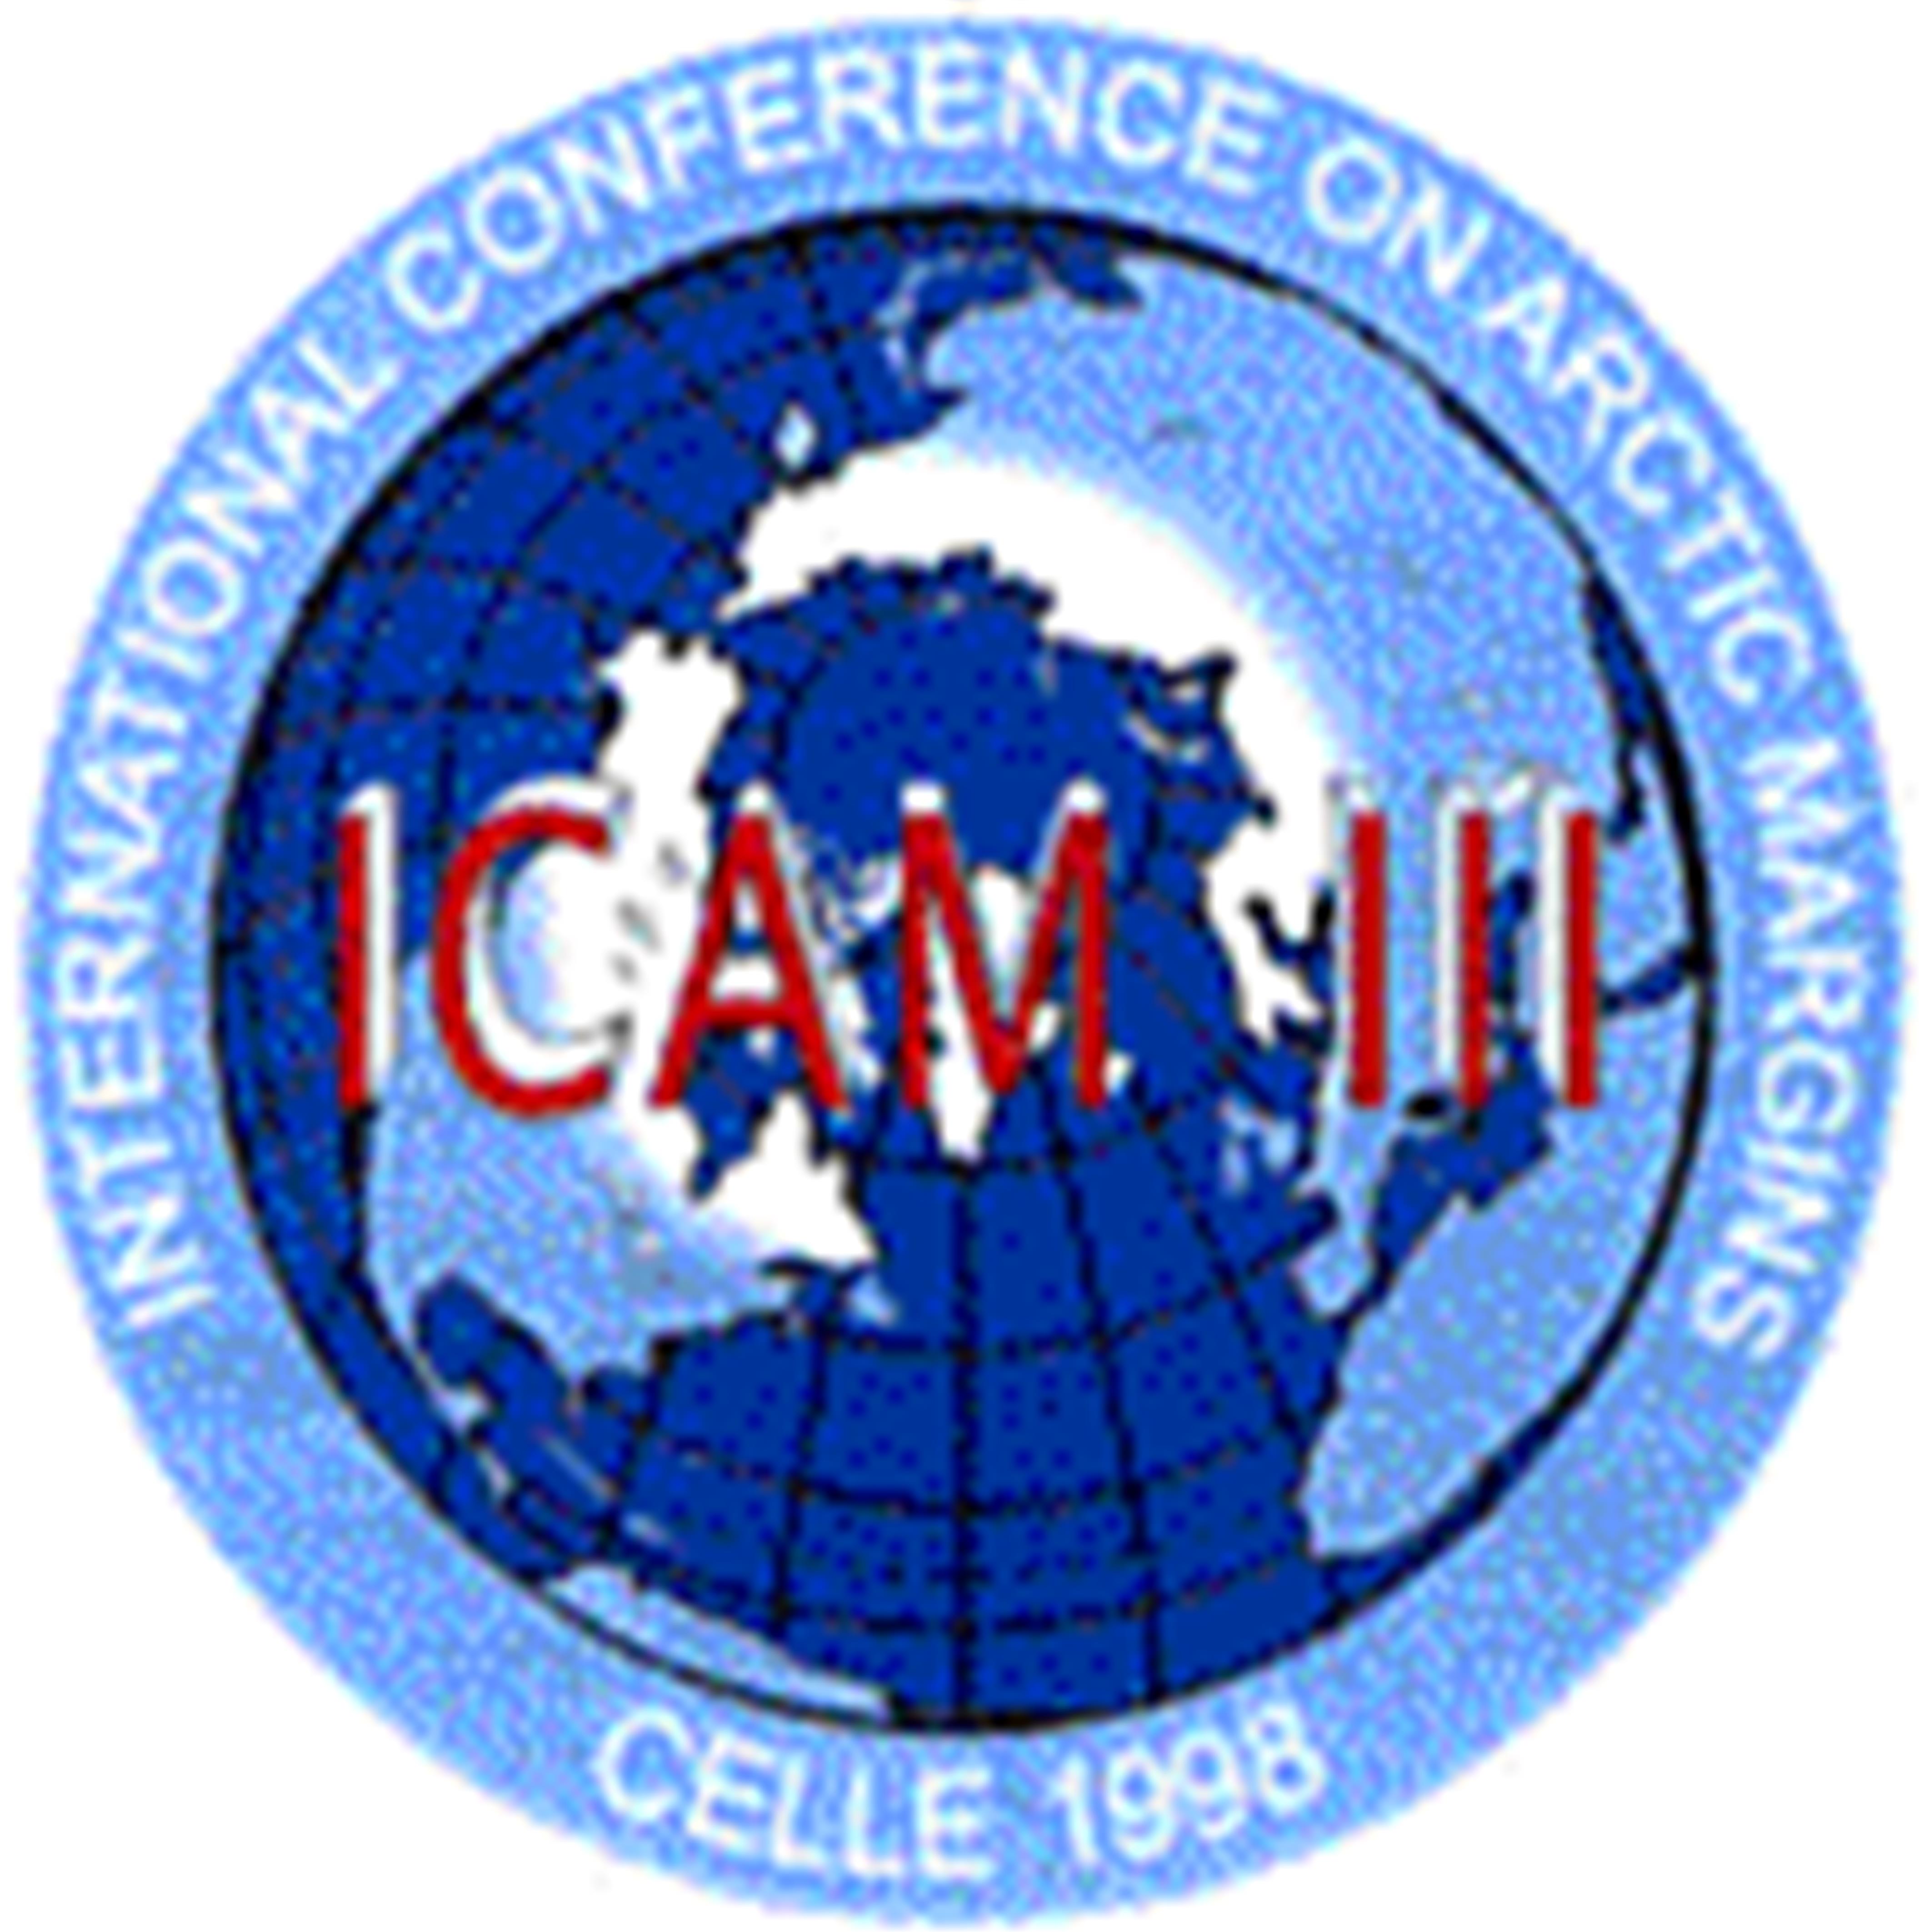 ICAM-98-Logo